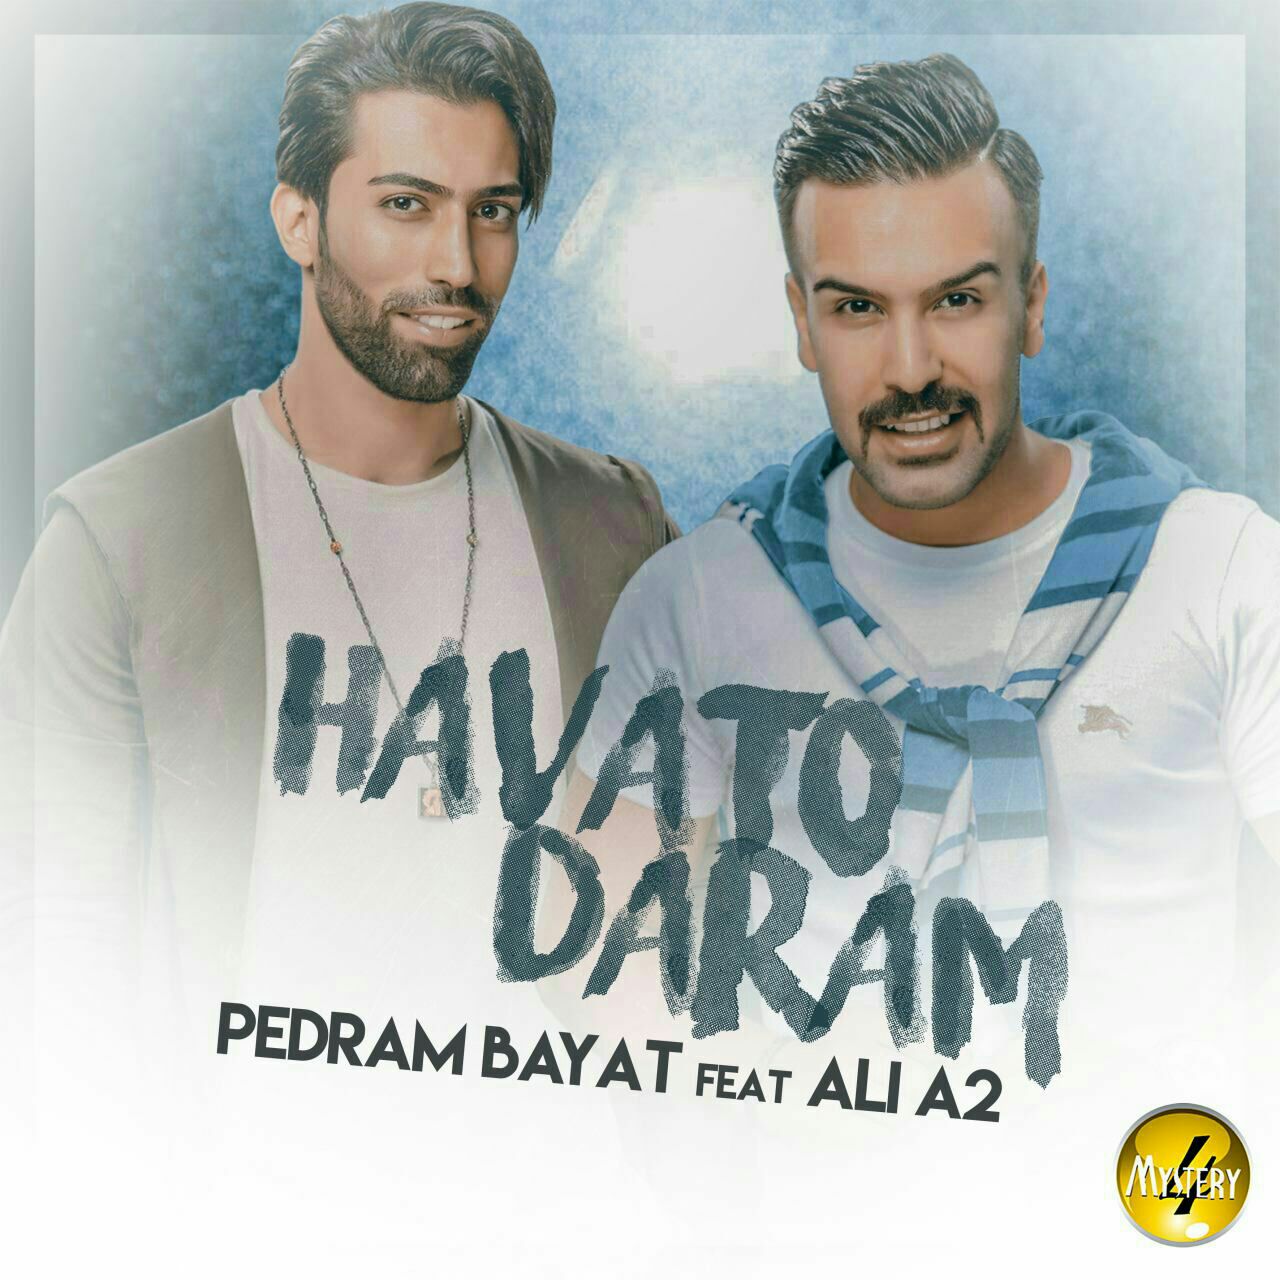 Pedram Bayad & Ali A2 – Havato Daram